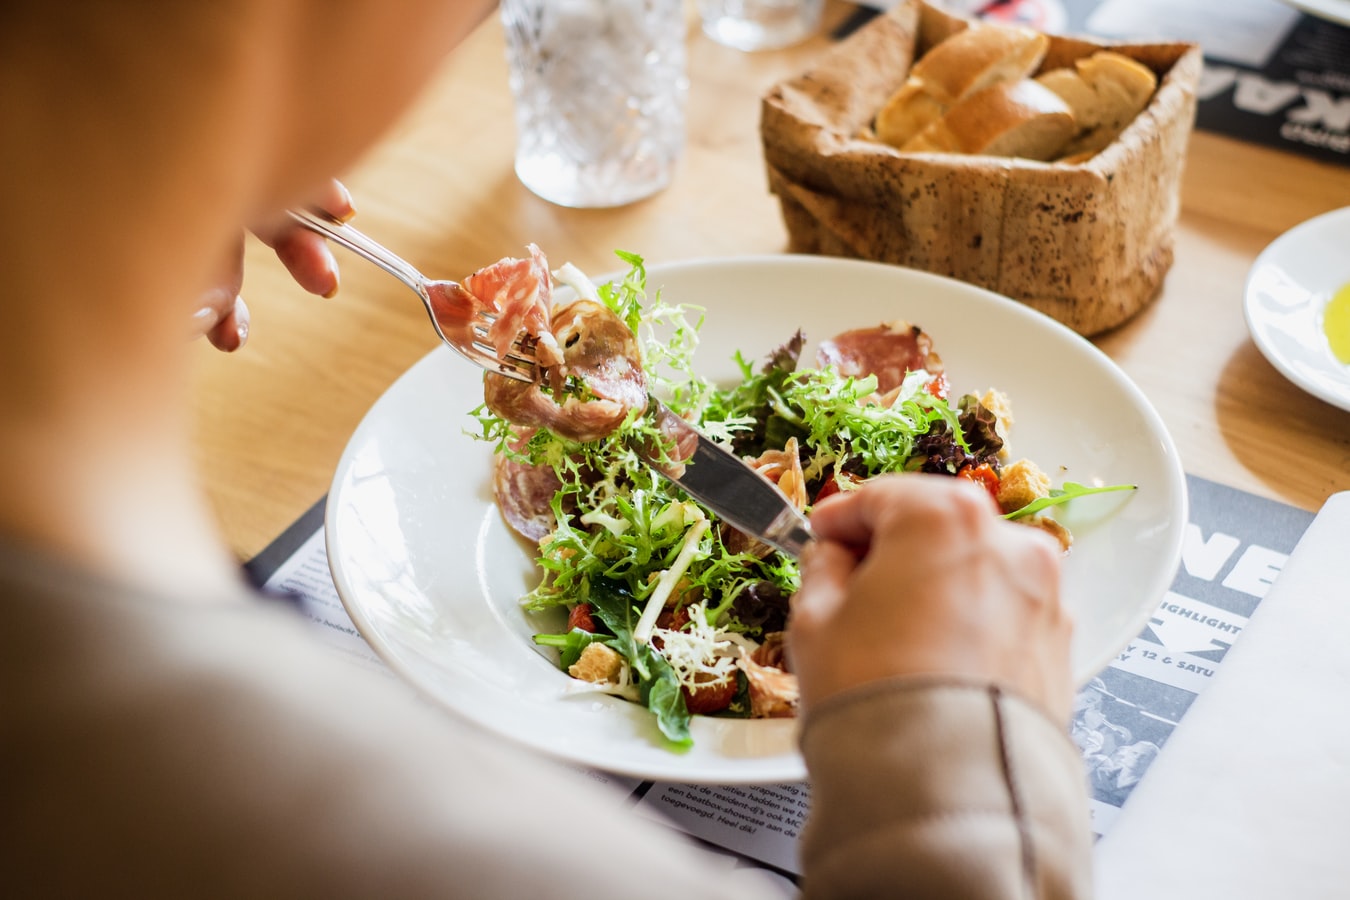 Dieta Mediterranea vs Dieta cheto – qual è la dieta migliore? Ha senso paragonarle?